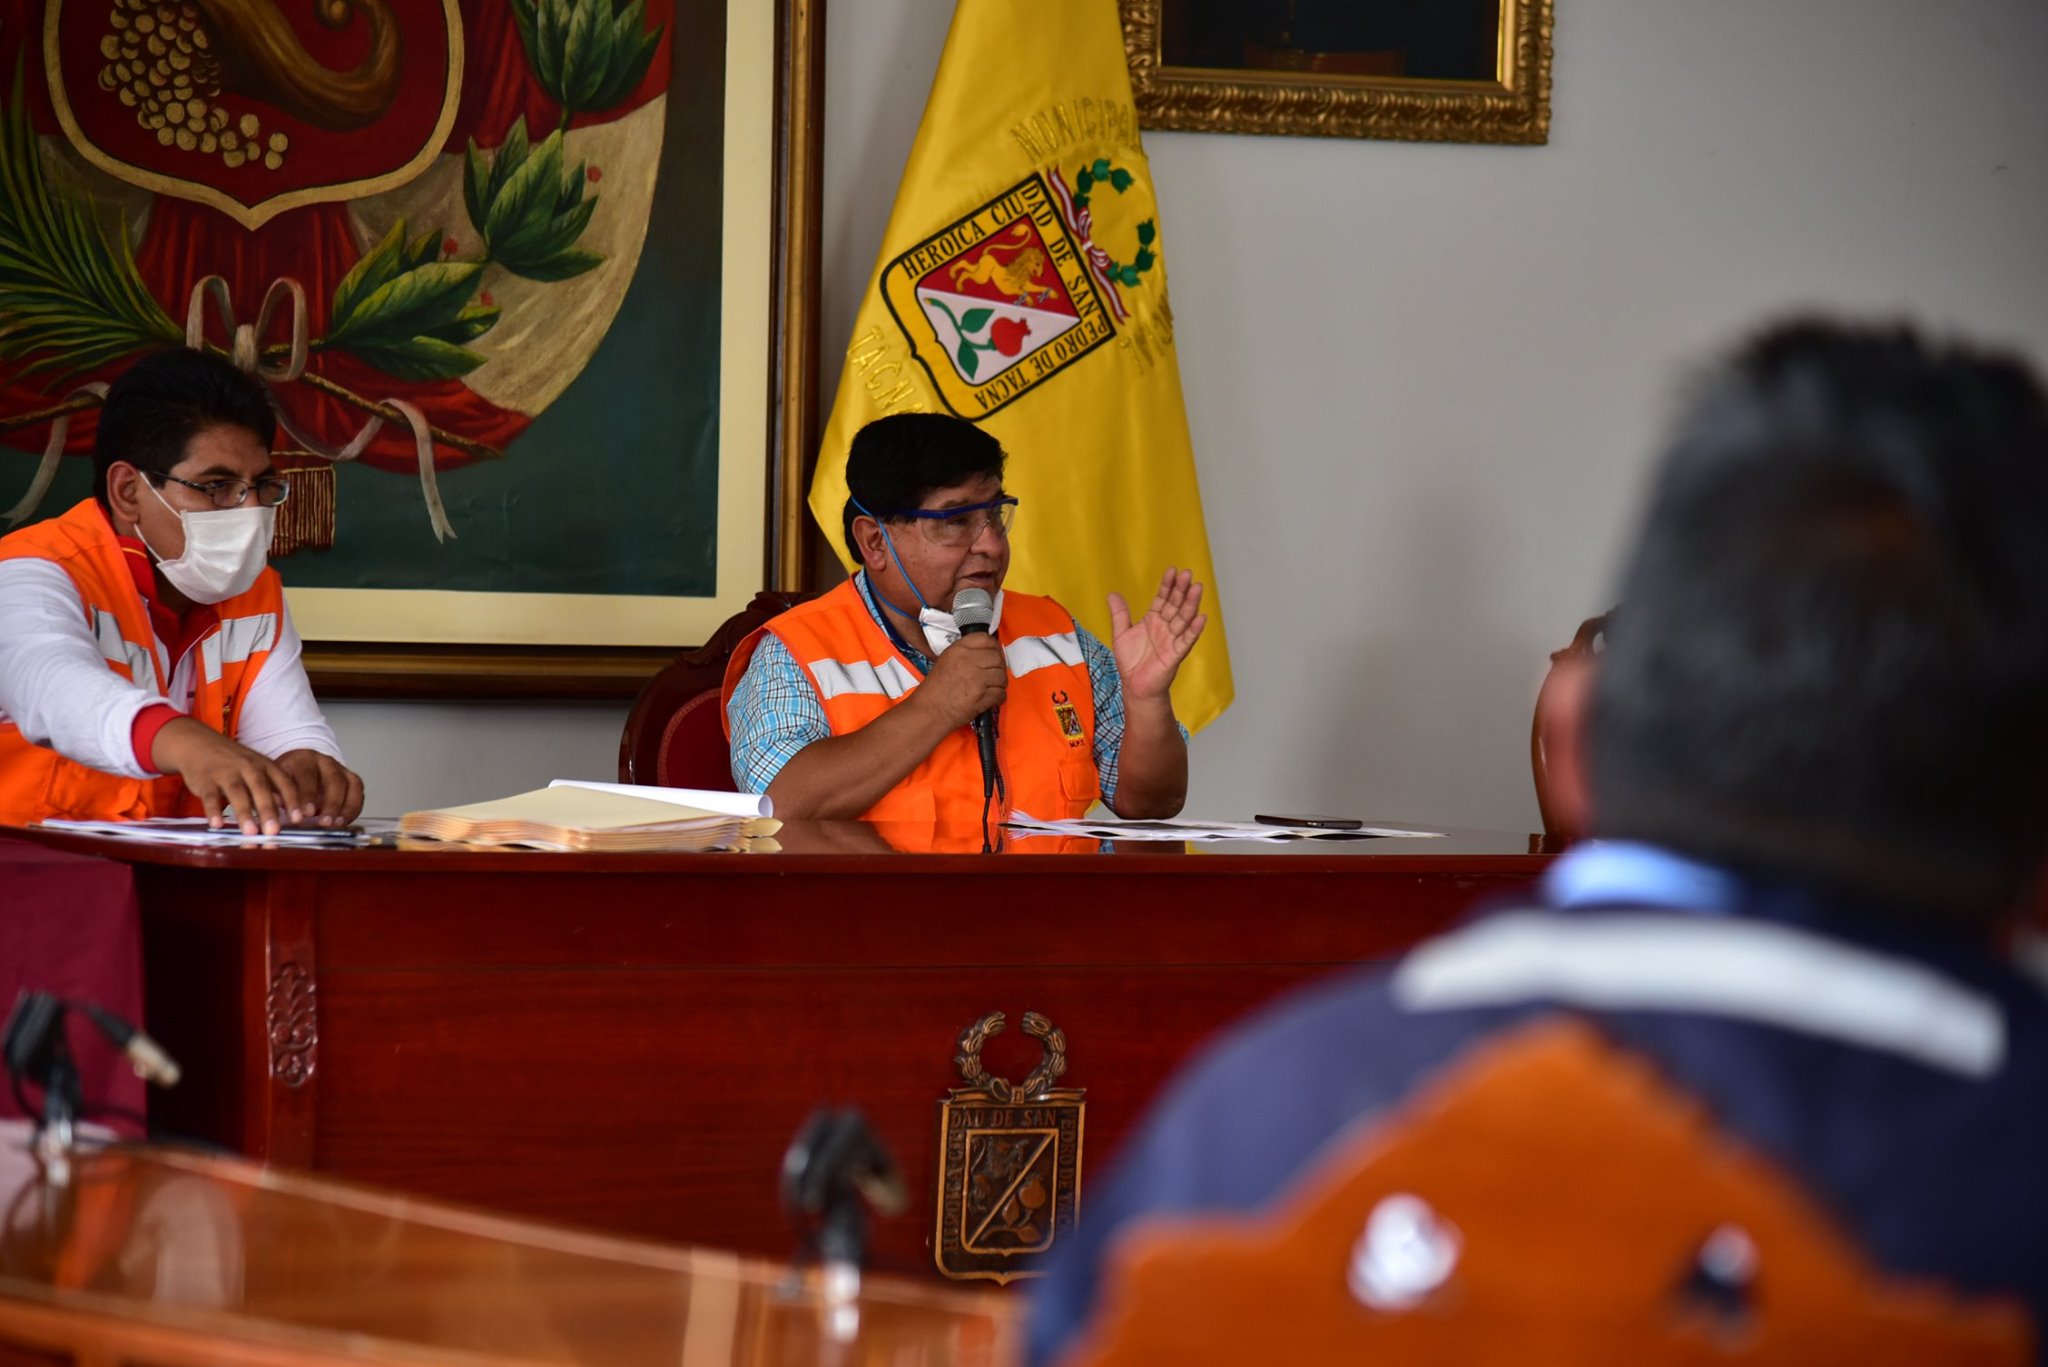 Alcalde de Tacna dice que no tiene dinero para pagos de planillas del municipio provincial